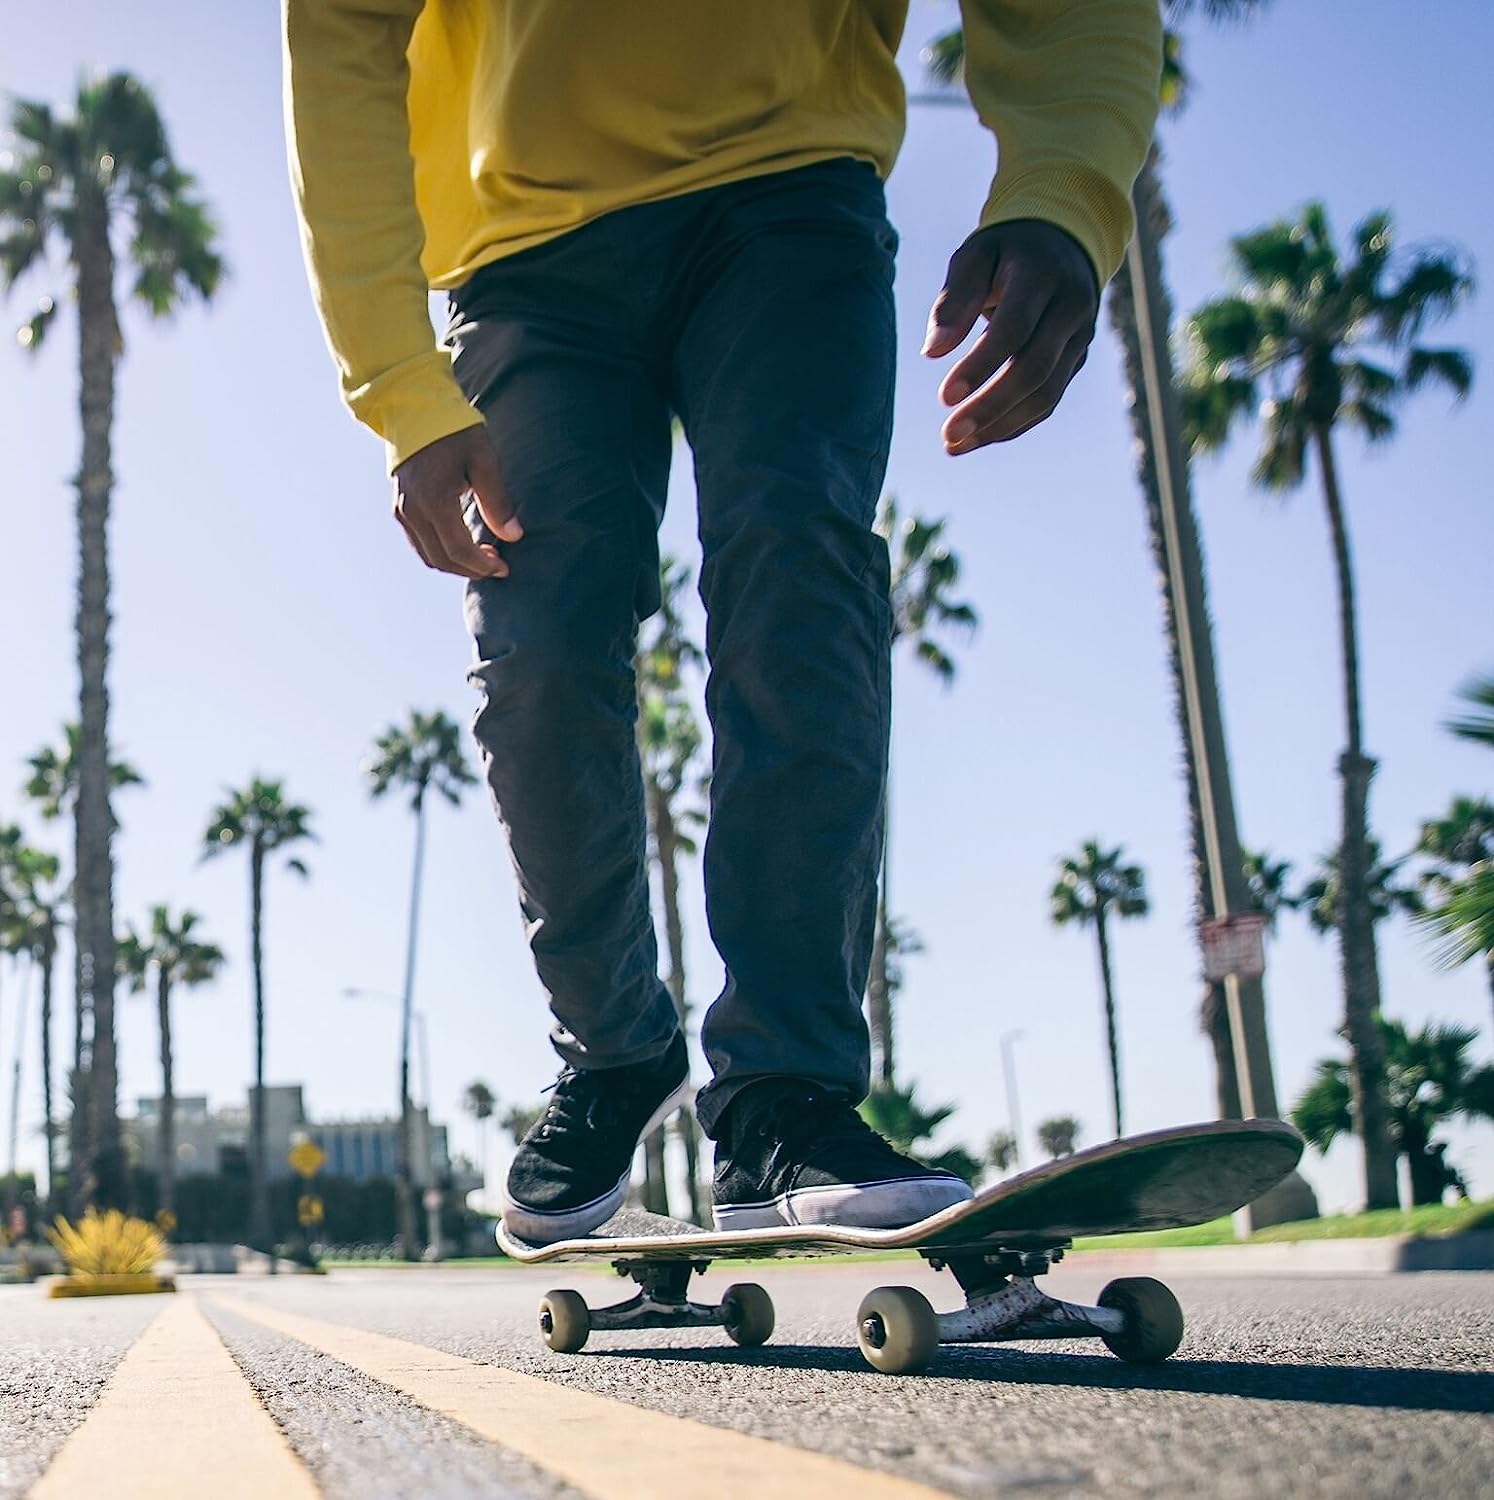 13 Best Skateboard Decks Of All Time- Real Skateboard 2023